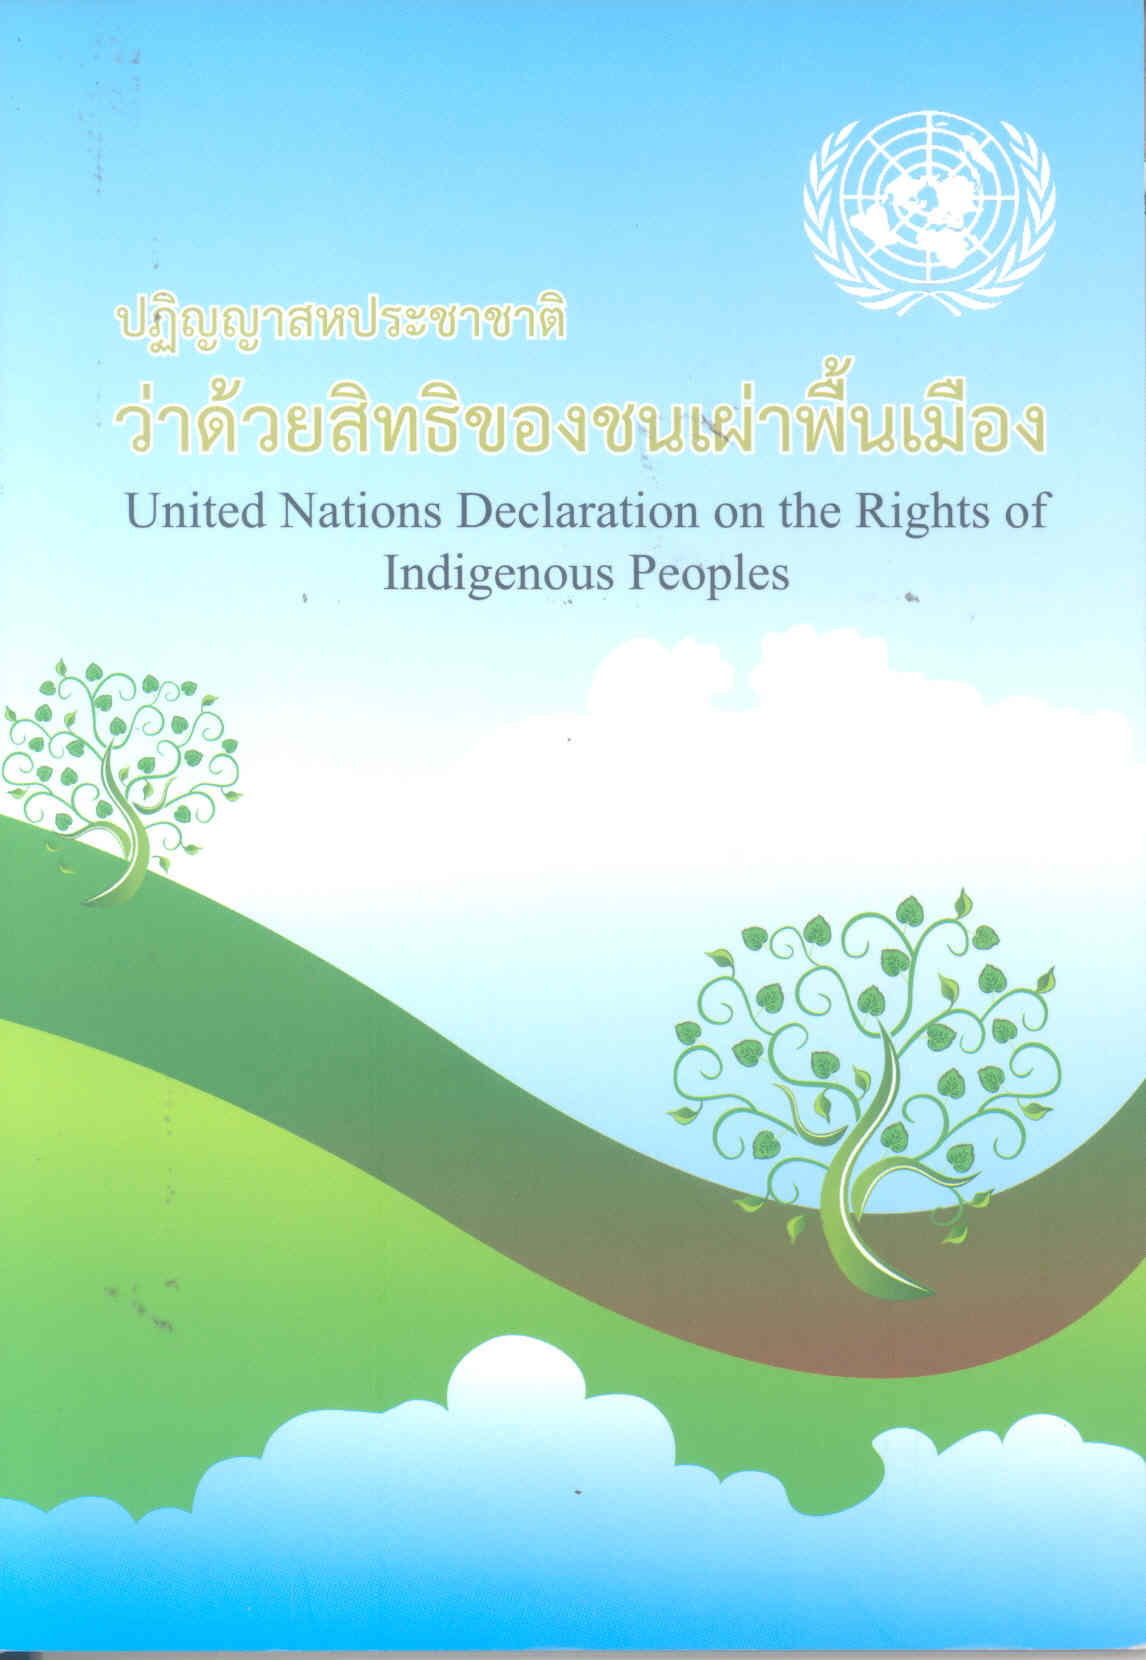 ปฏิญญาสหประชาชาติว่าด้วยสิทธิของชนเผ่าพื้นเมือง /เครือข่ายชนเผ่าพื้นเมืองแห่งประเทศไทย||United Nations Declaration on the Rights of Indigenous Peoples